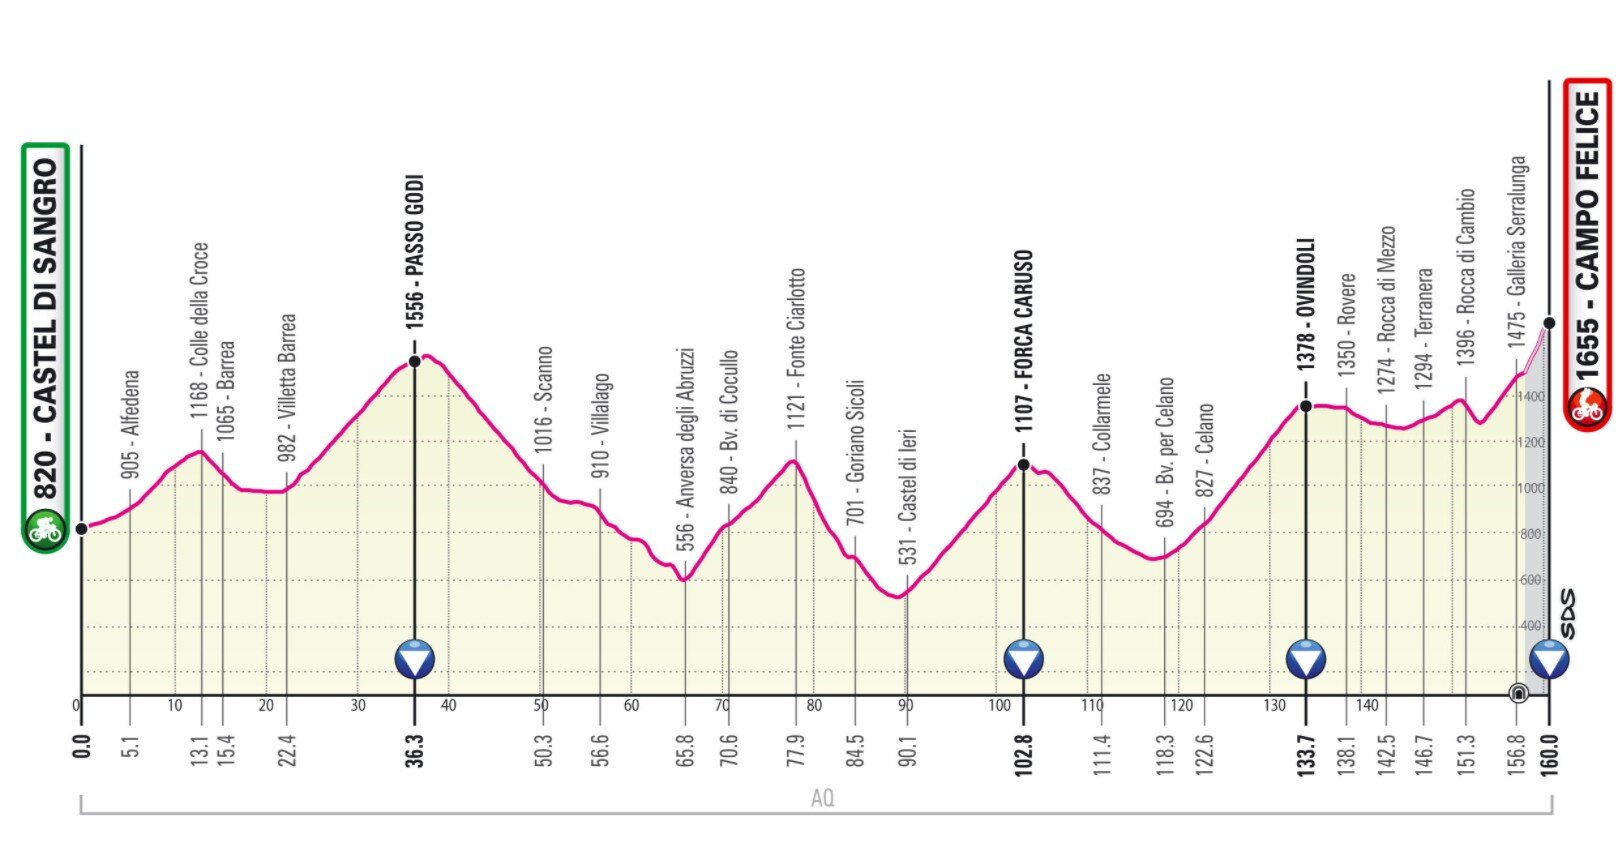 Stage 9 Giro Italia 2021